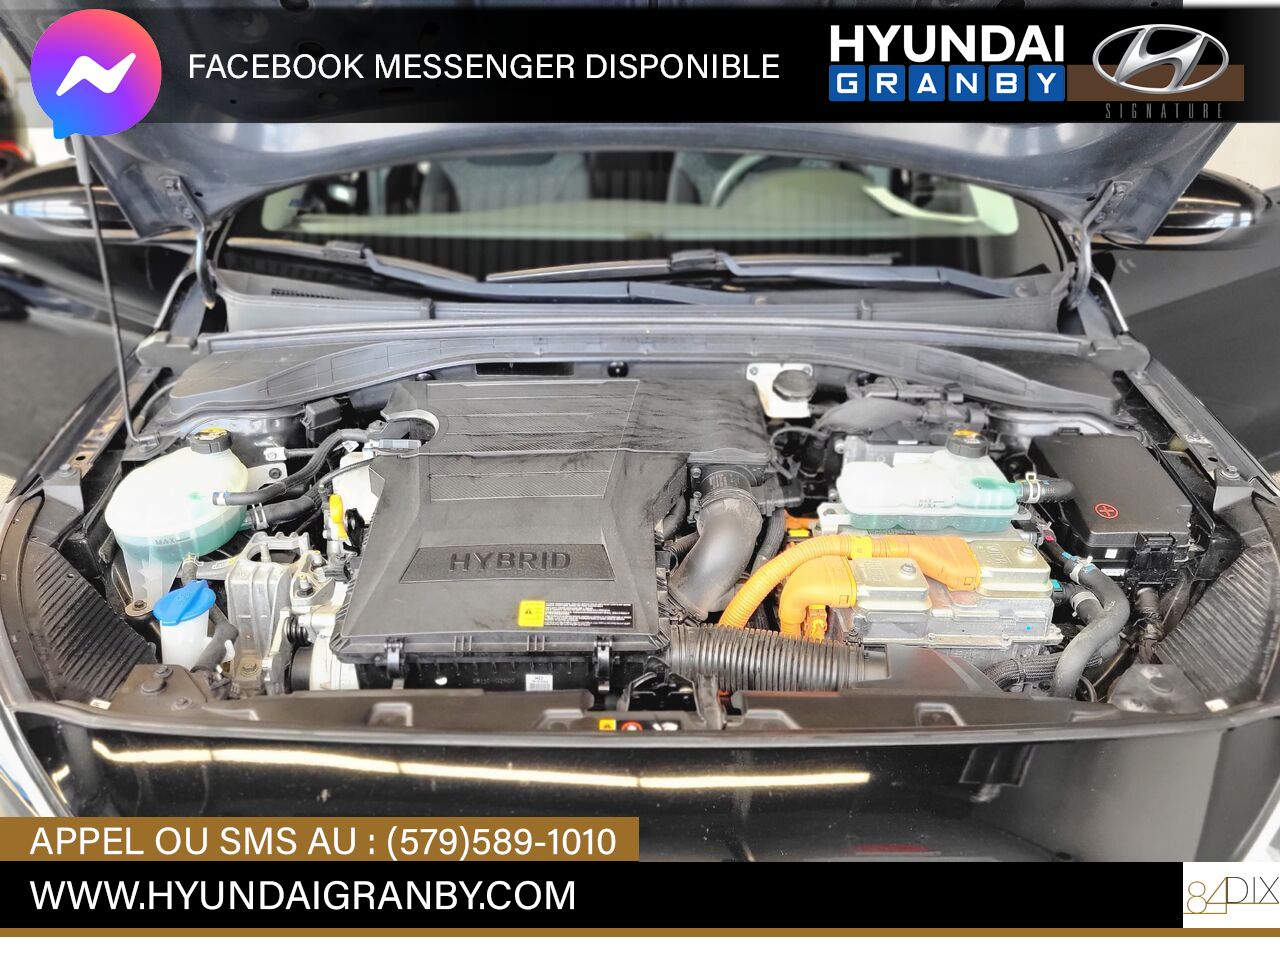 2019 Hyundai Ioniq hybride Granby - photo #31